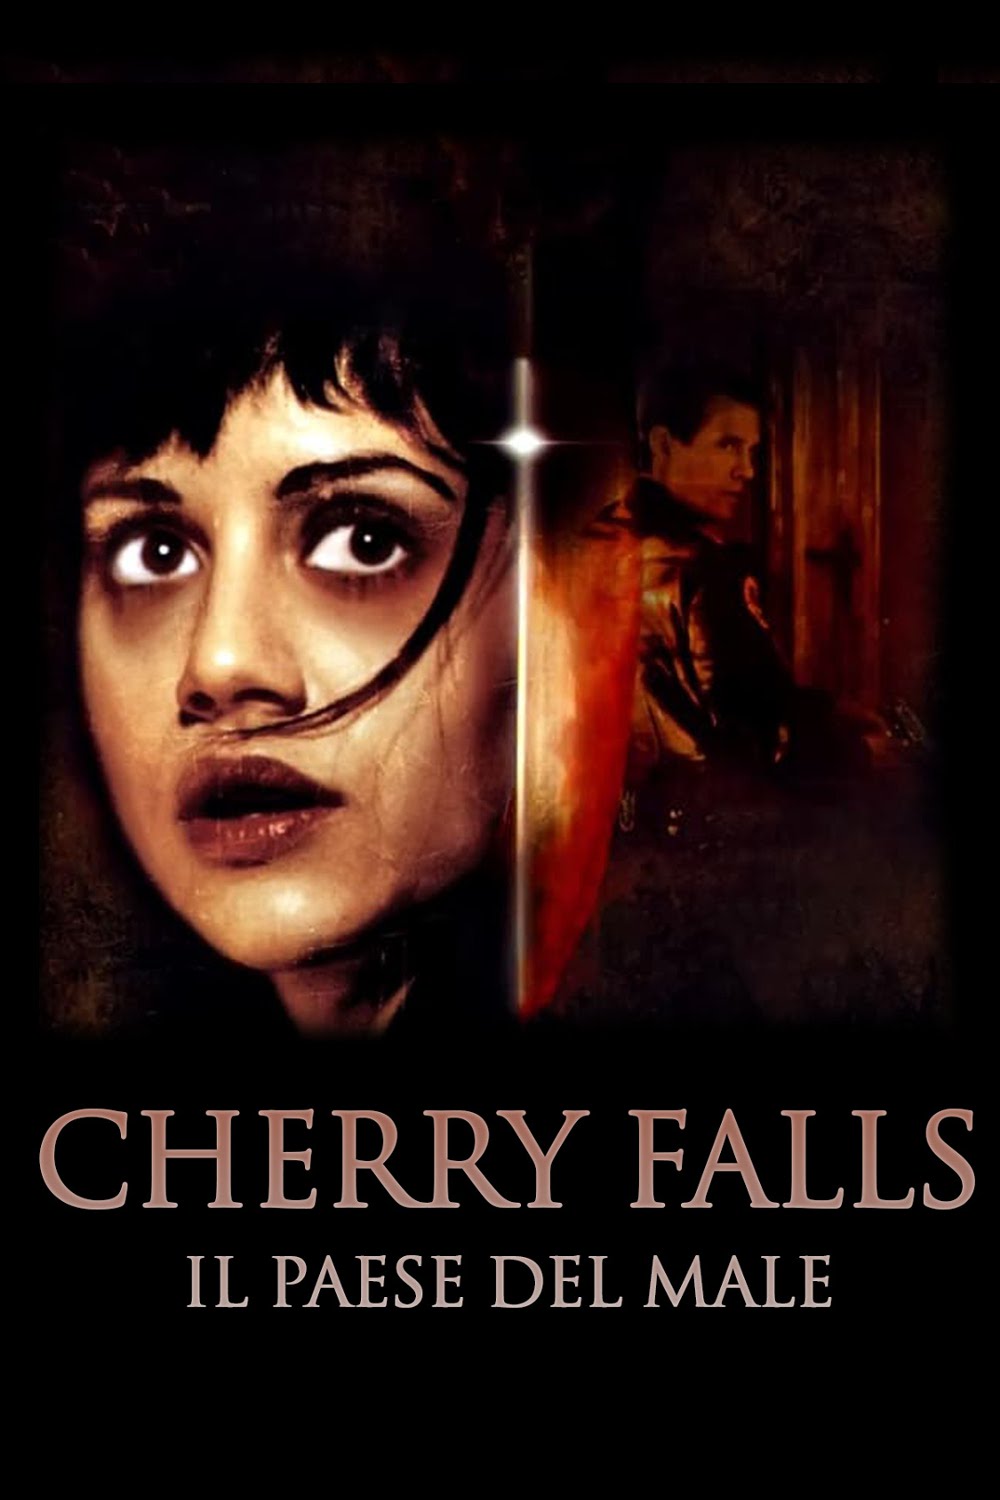 Cherry Falls – Il paese del male (2000)